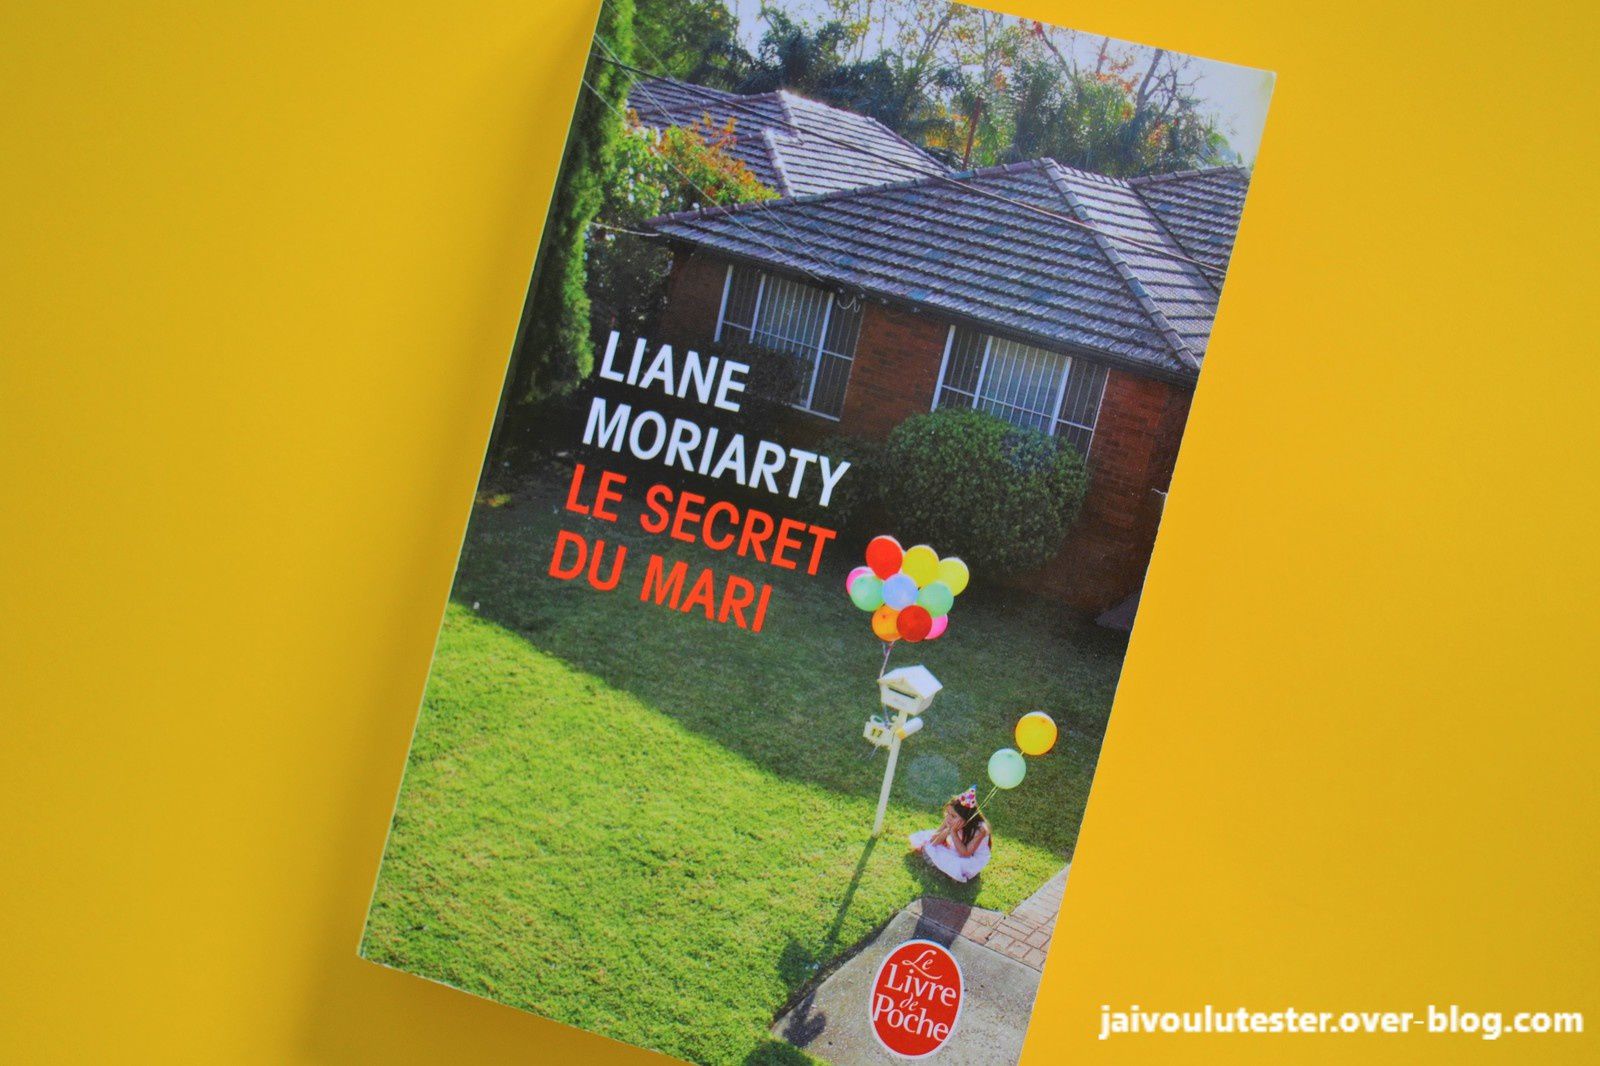 ... Le secret du mari, livre de Liane Moriarty